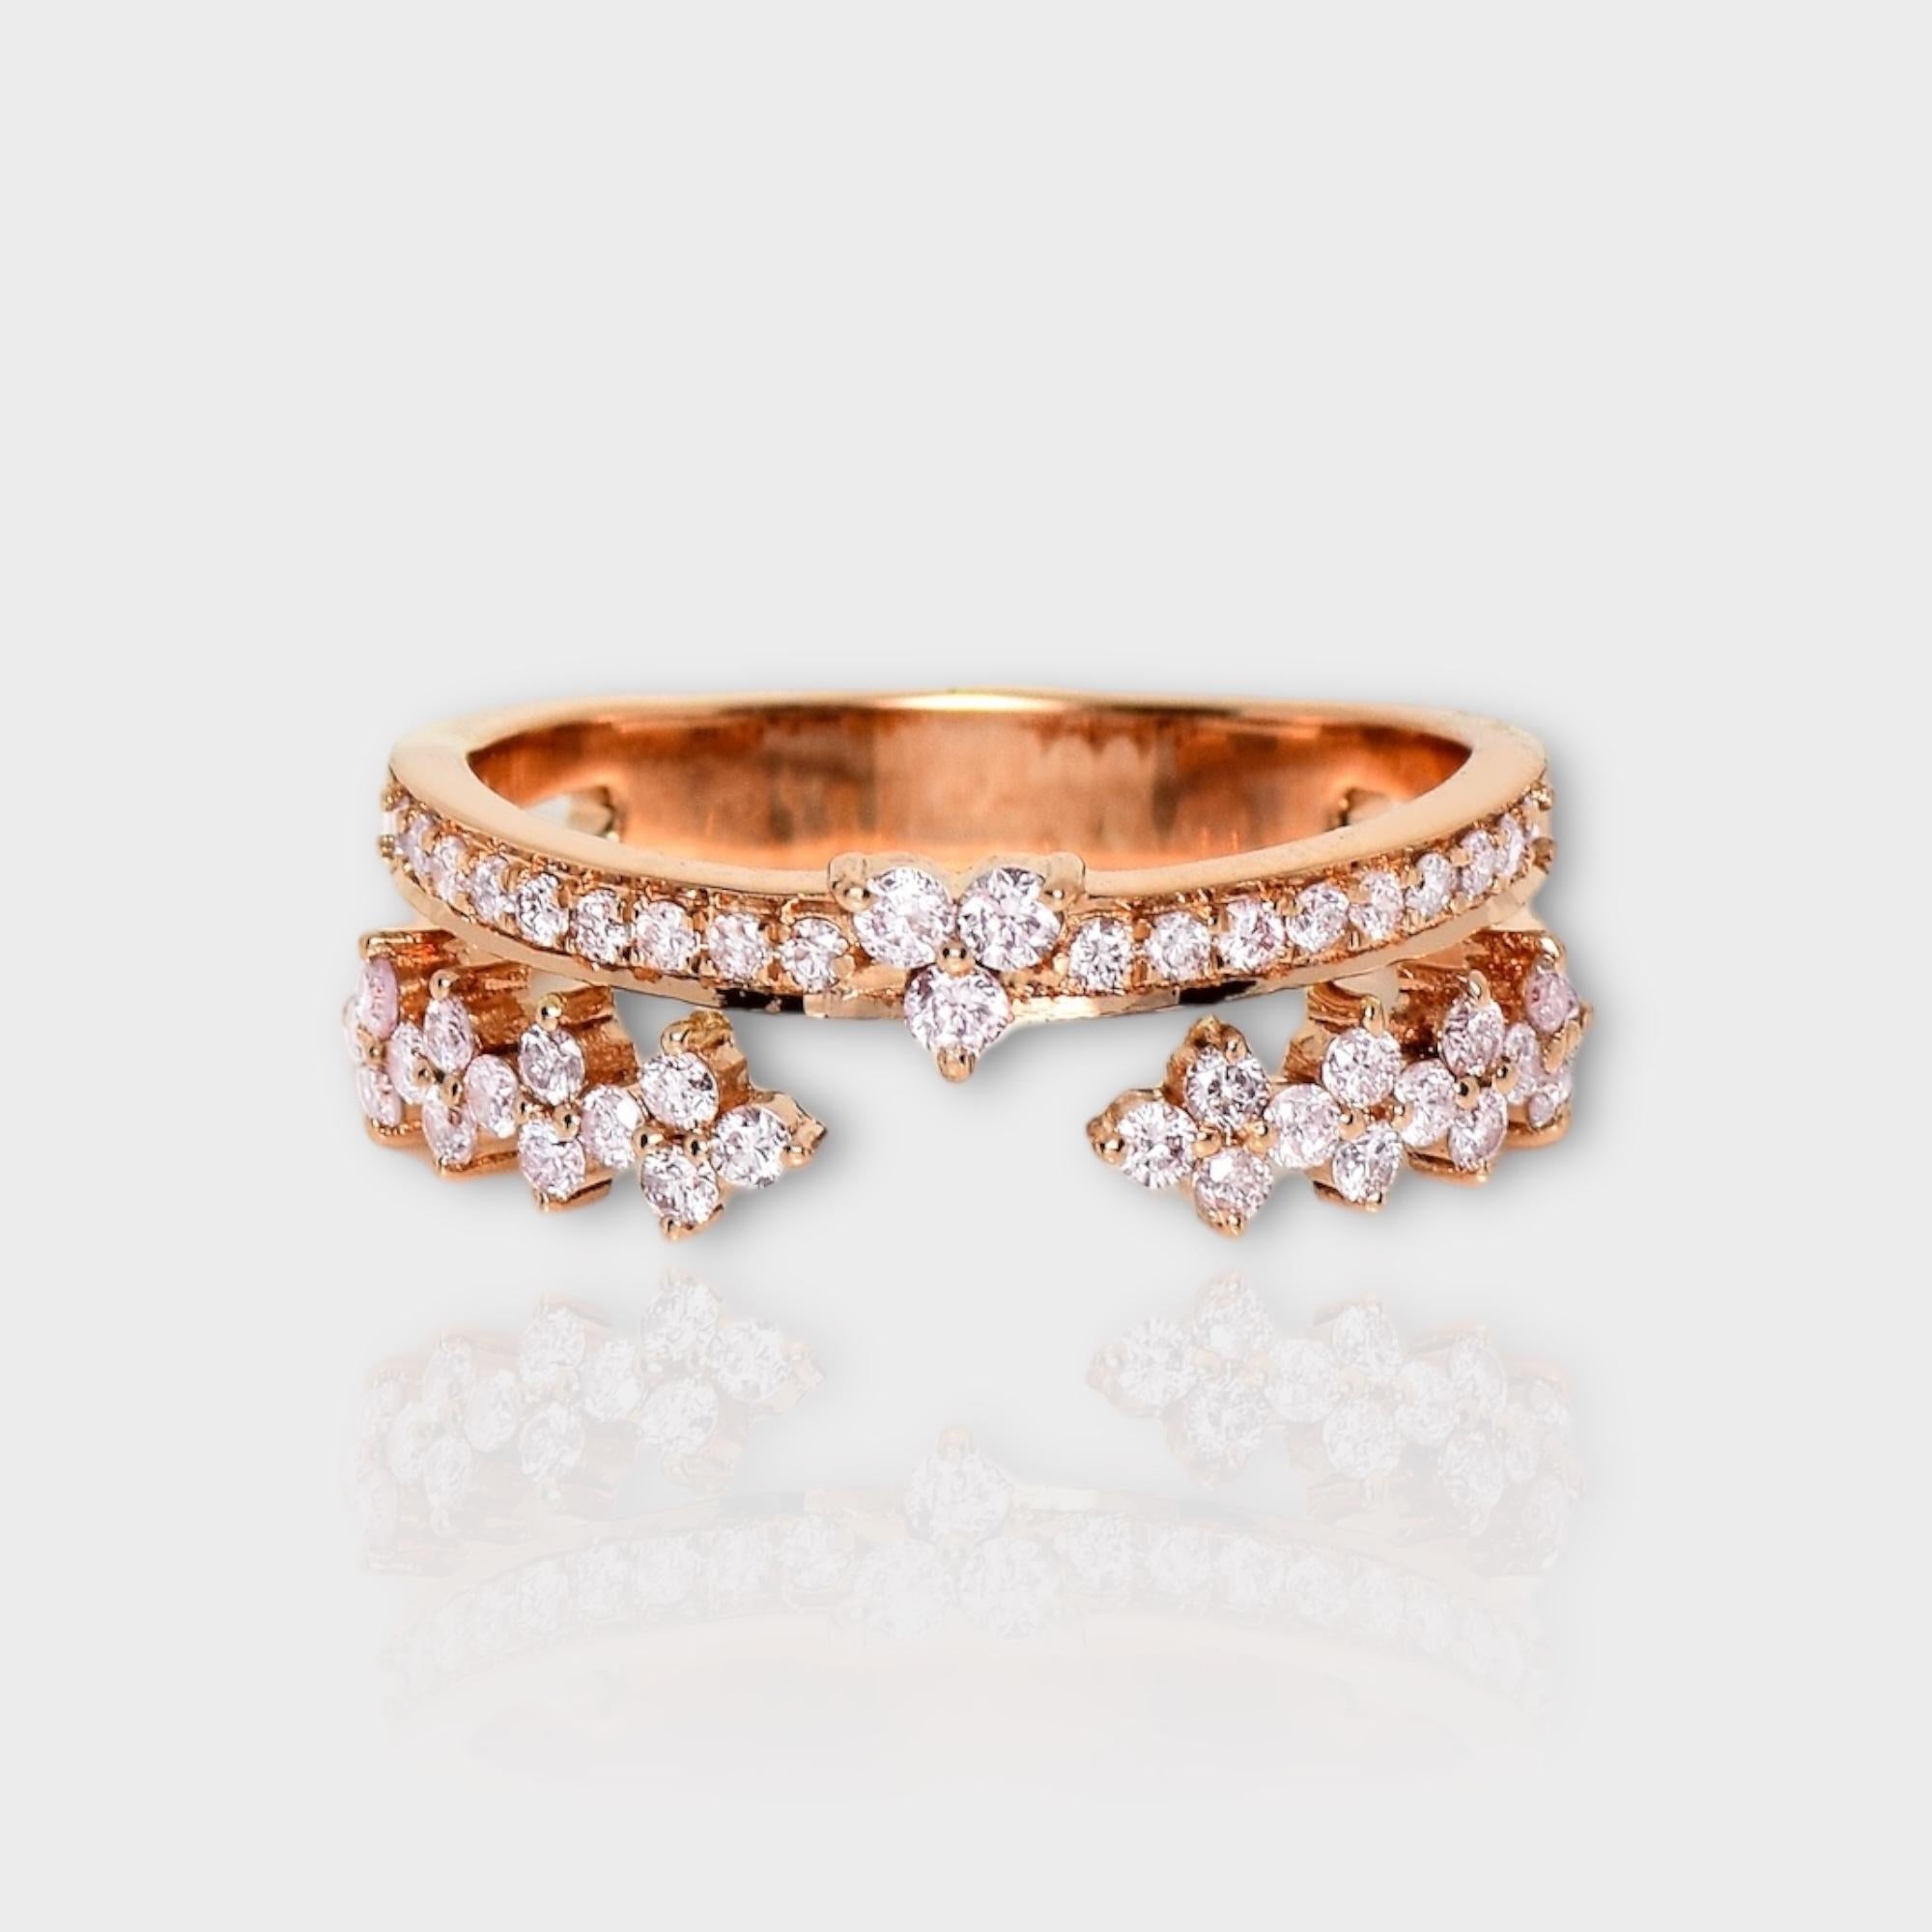 *IGI 14K 0.51 ct Natural Pink Diamonds Vintage Crown  Bague de fiançailles Design/One*

Ce bracelet présente un superbe design avec une couronne vintage en or rose 14 carats. Il est serti de diamants roses naturels pesant 0.51 carats.

Cette bague